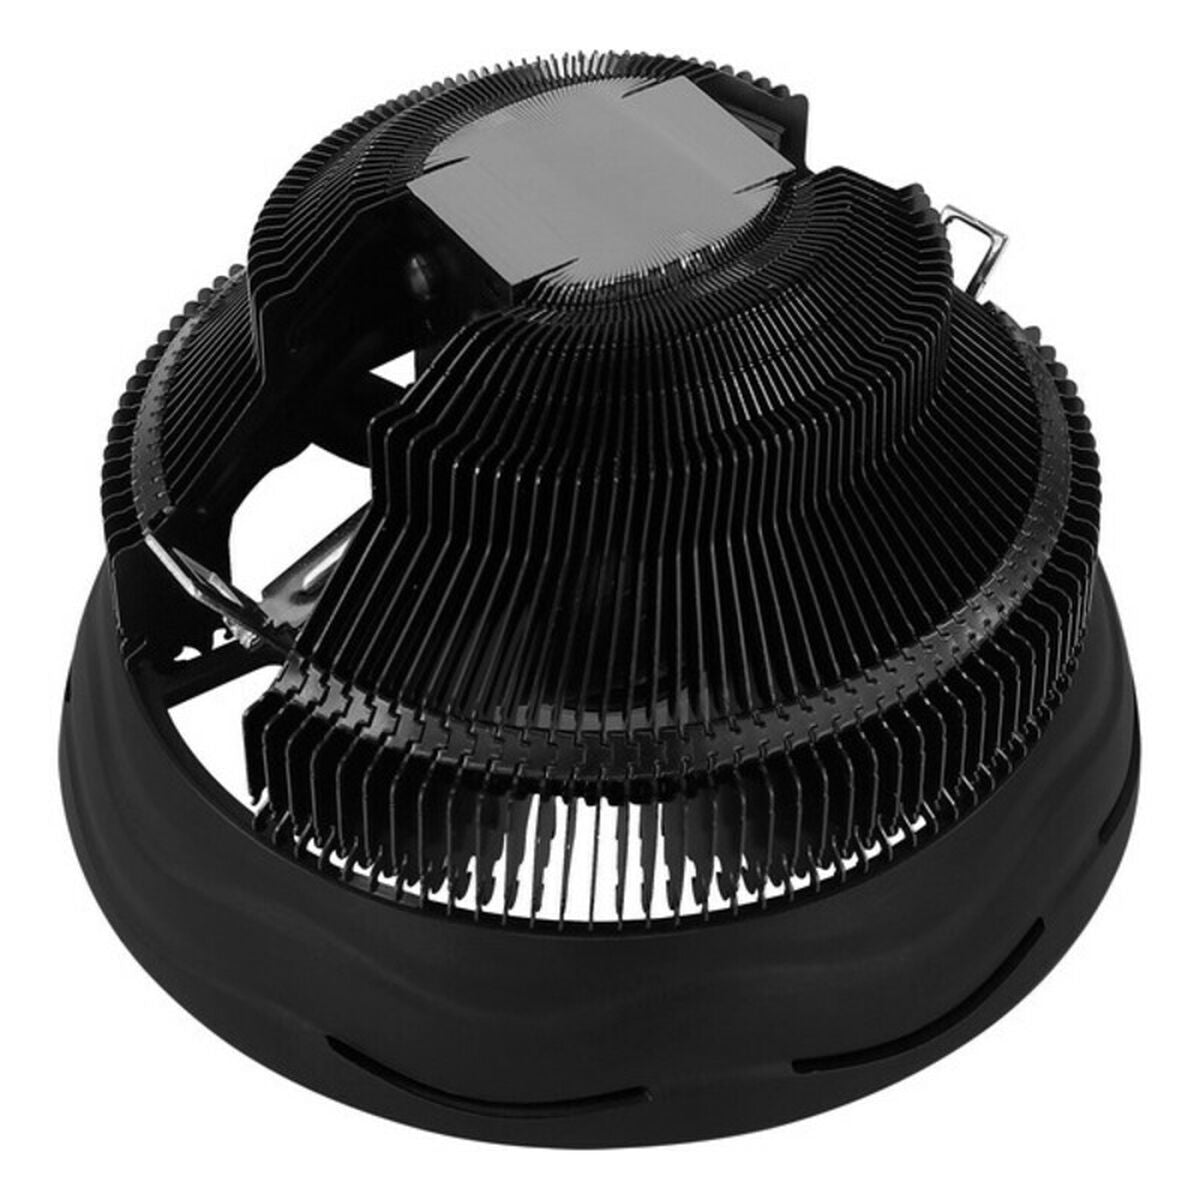 Ventilatore CPU Aerocool Core Plus Ø 12 cm 1800 rpm